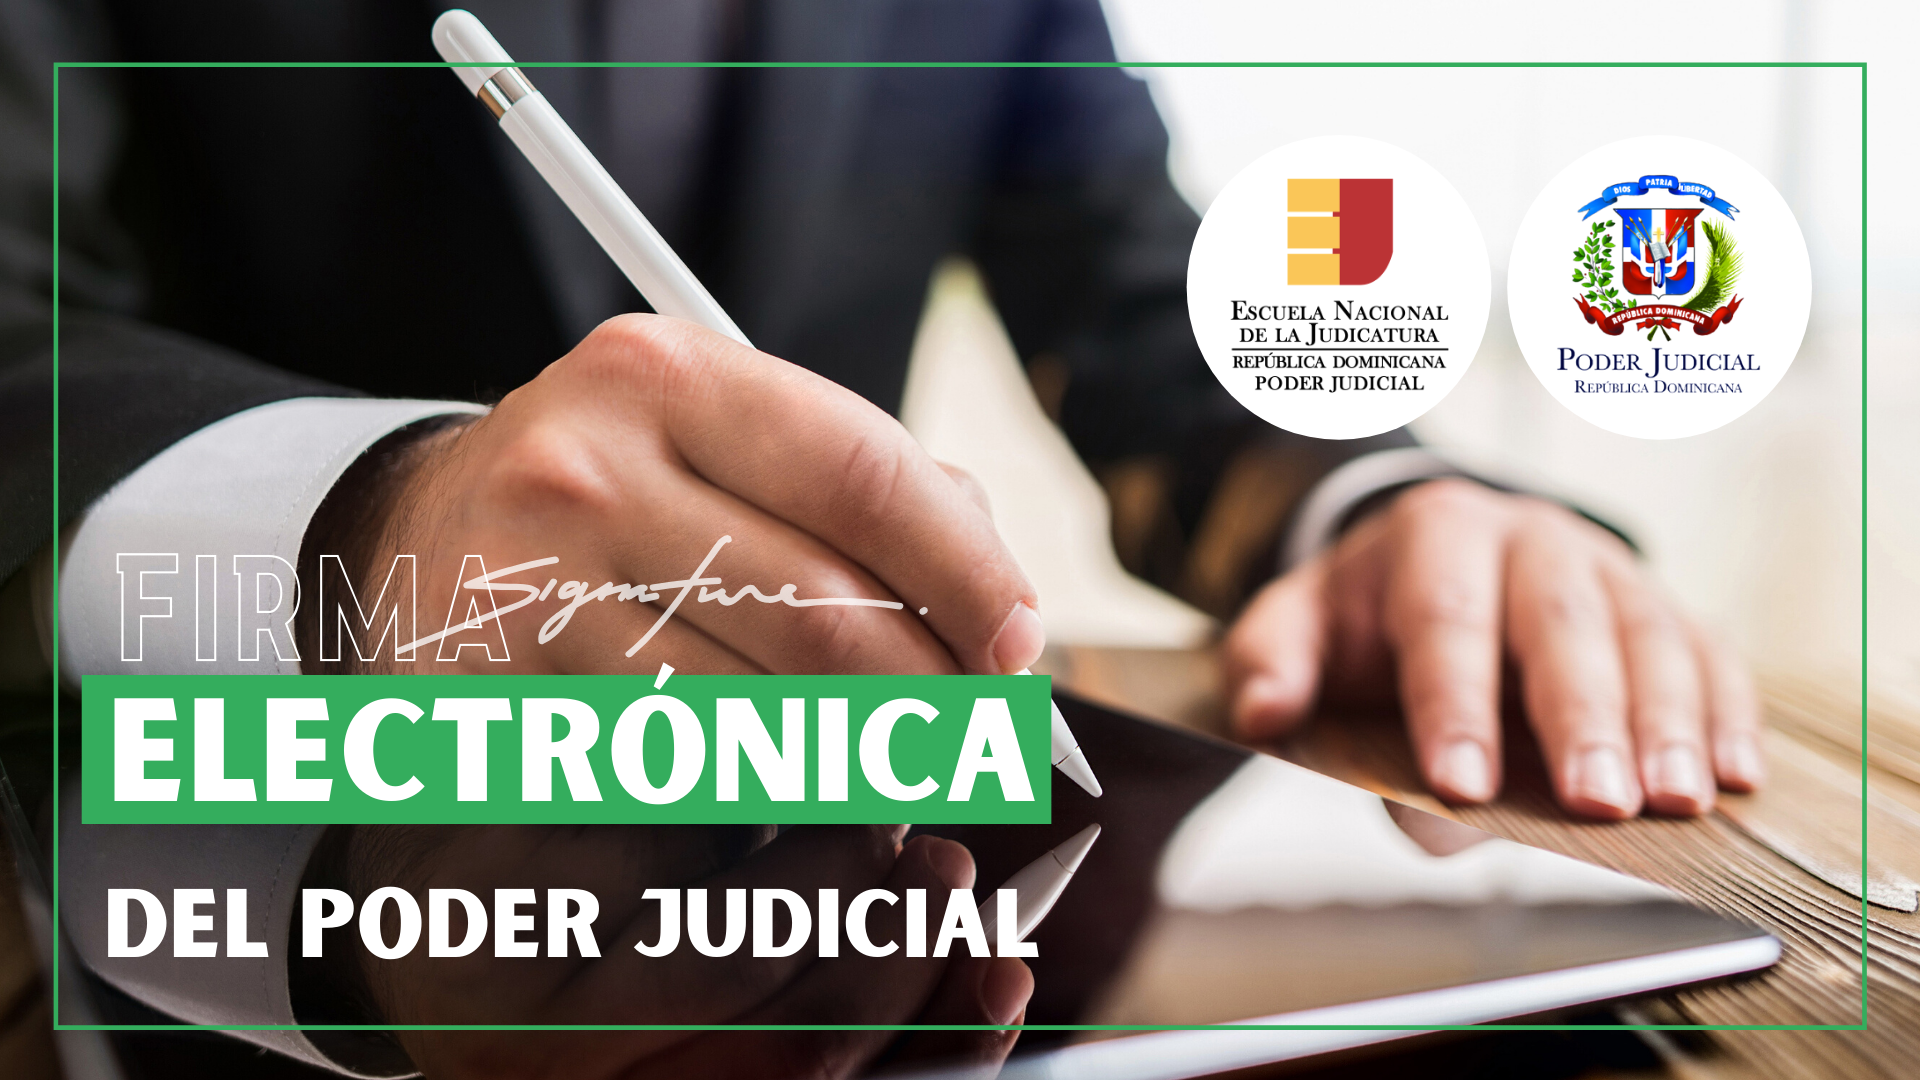 Firma Electrónica del Poder Judicial